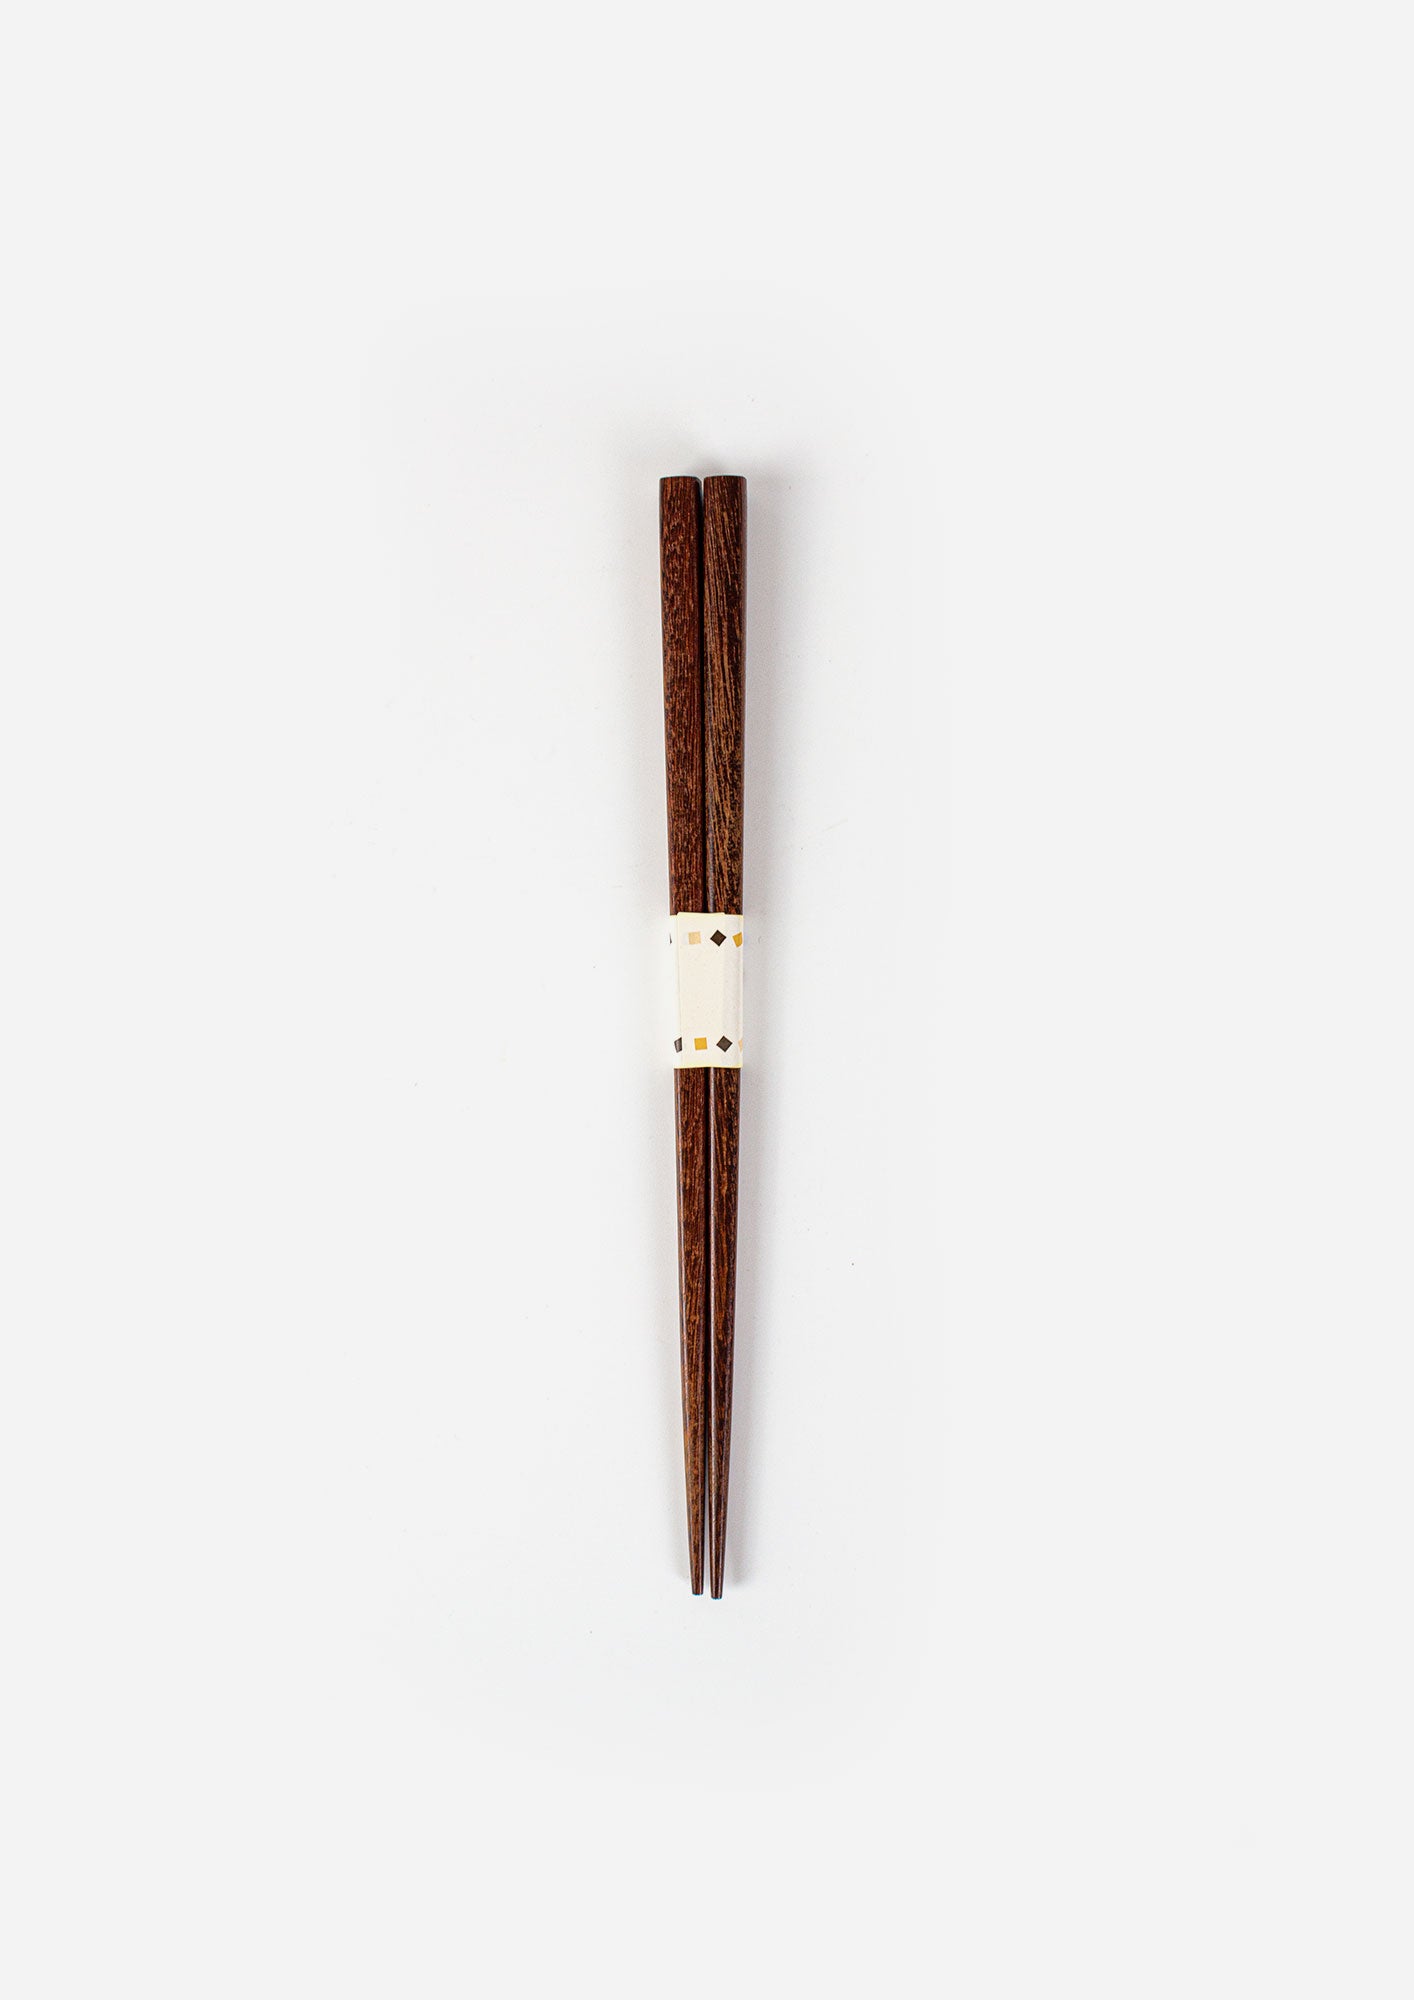 Natural Wood Chopsticks